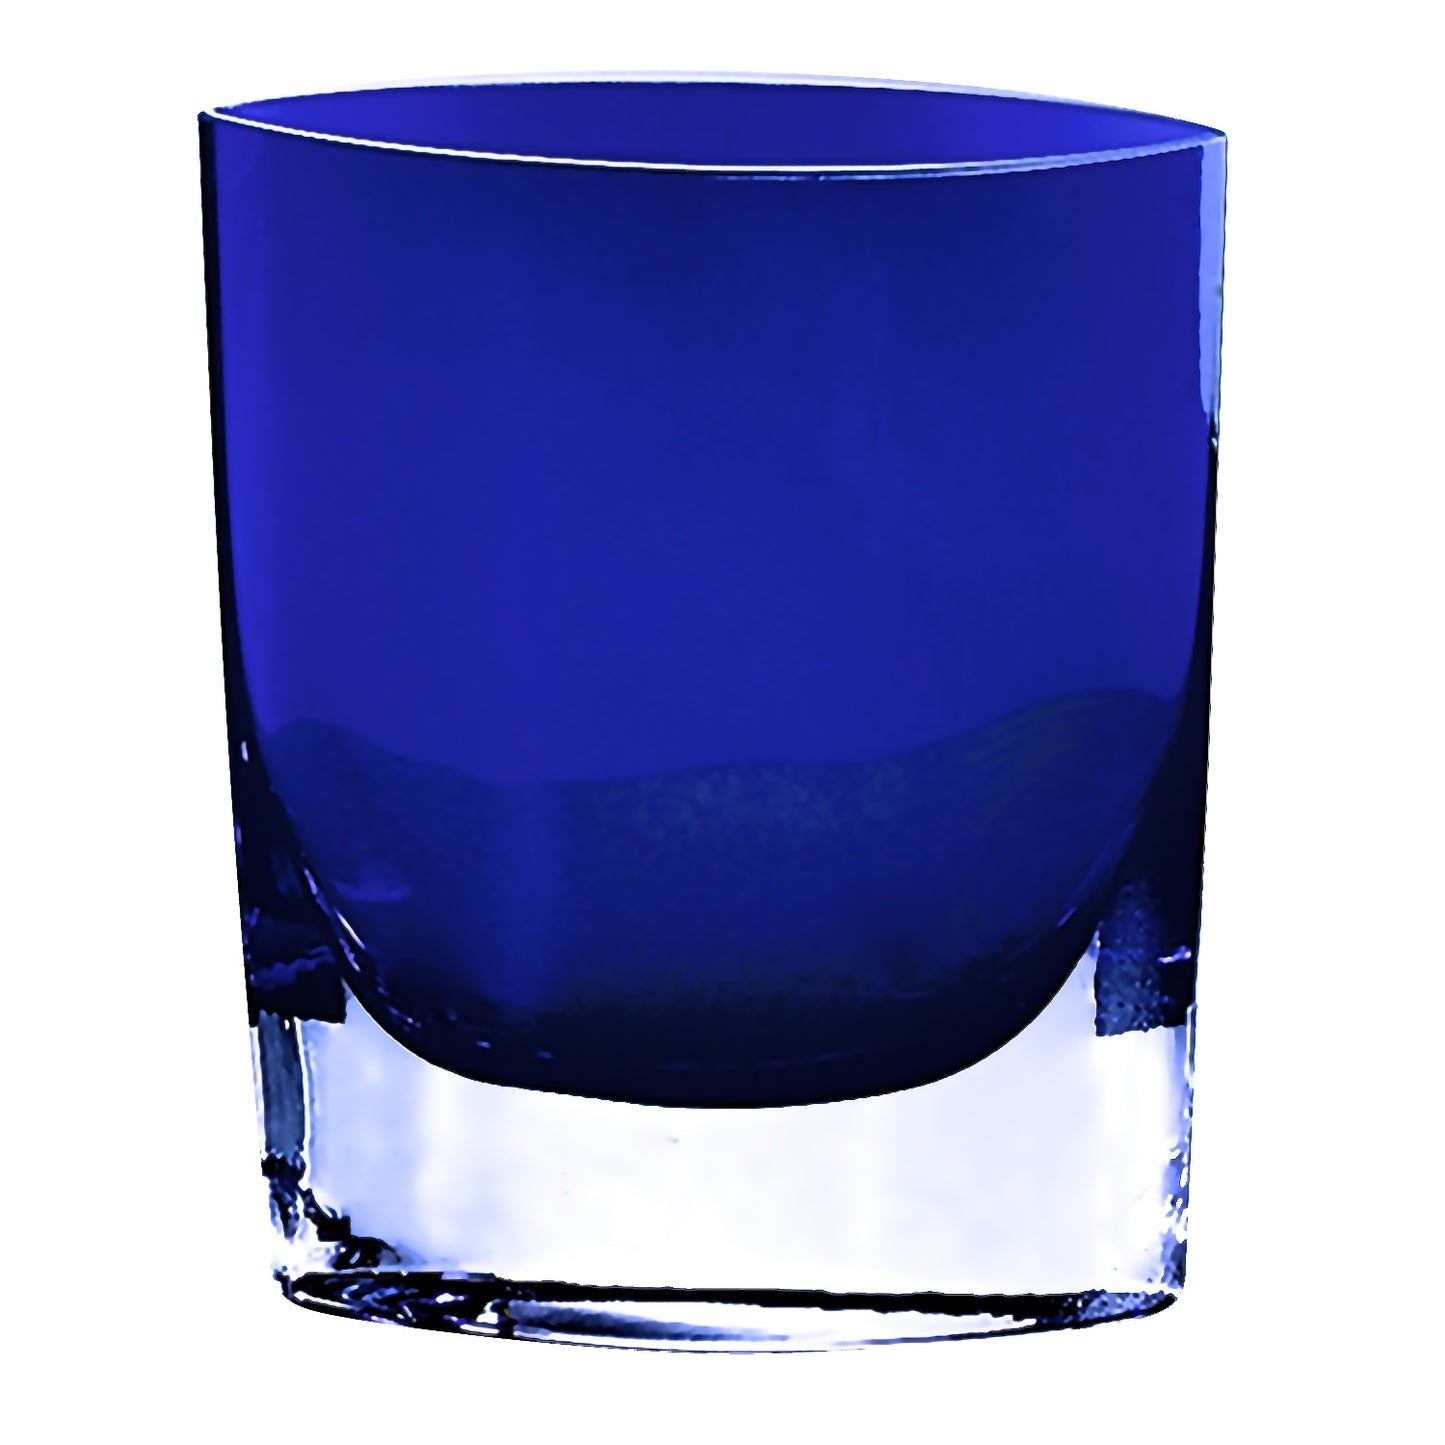 8" Mouth Blown Crystal European Made Cobalt Blue Pocket Shaped Vase